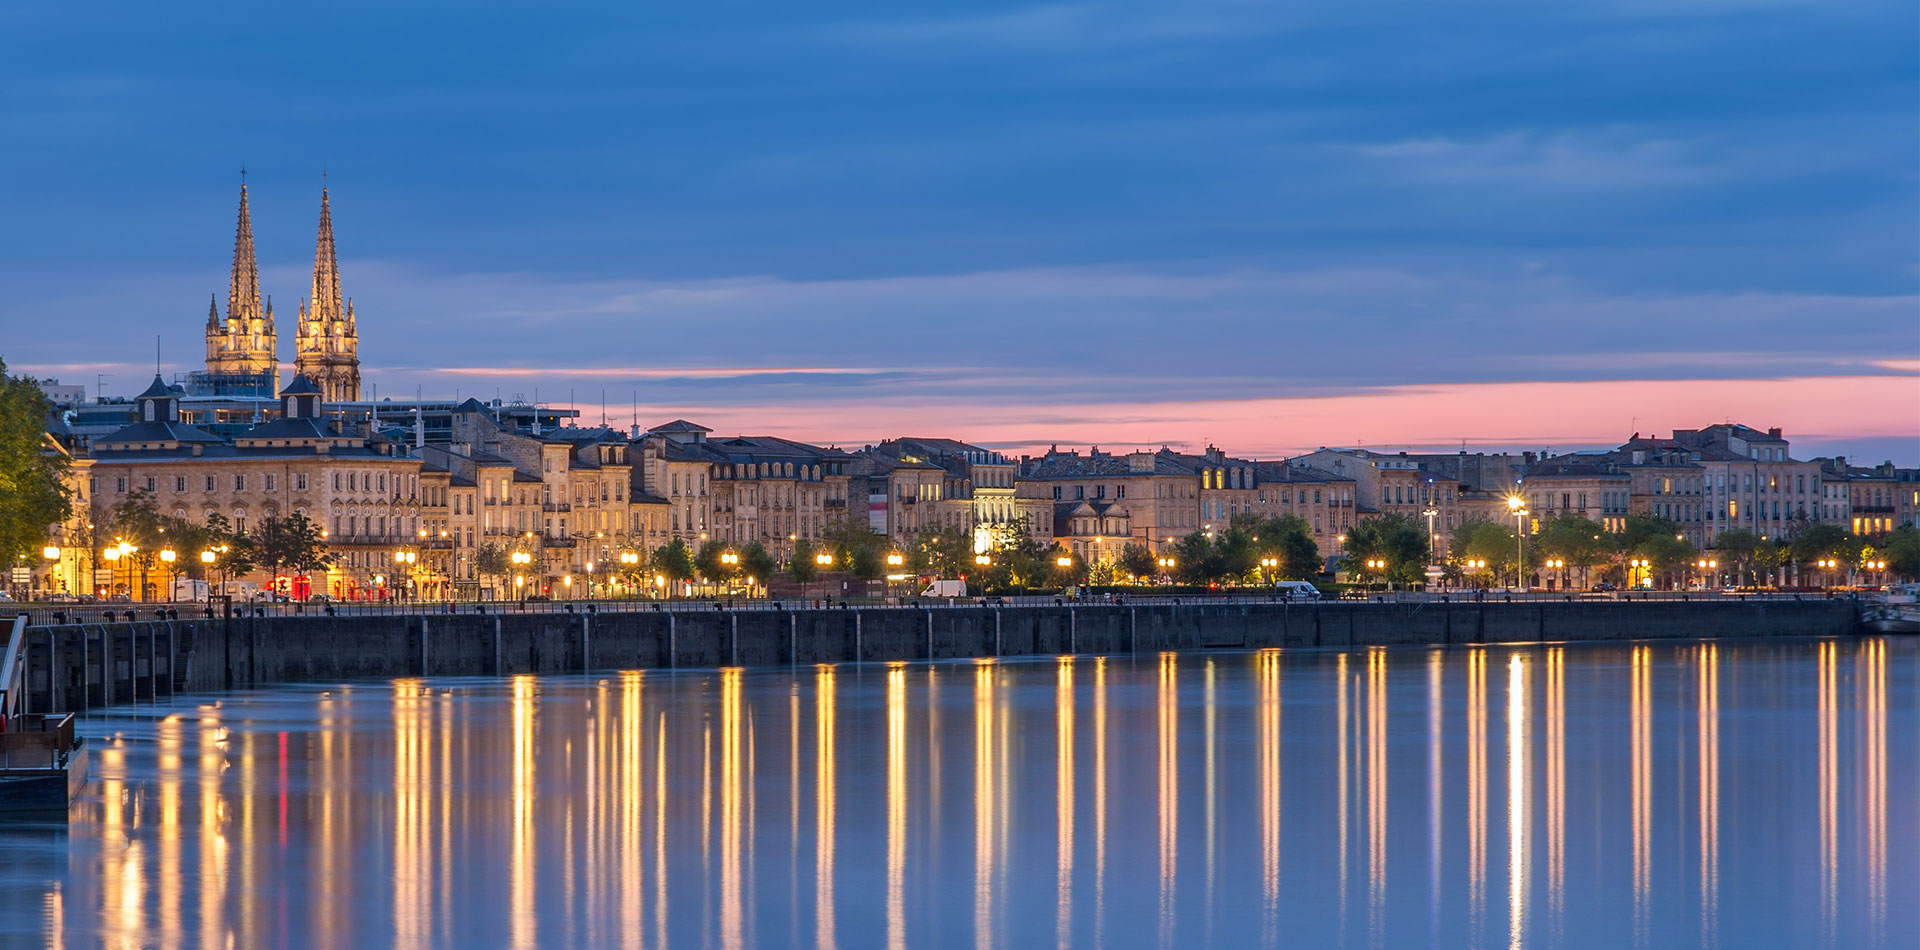 Evening view of Bordeaux, River Seine, France